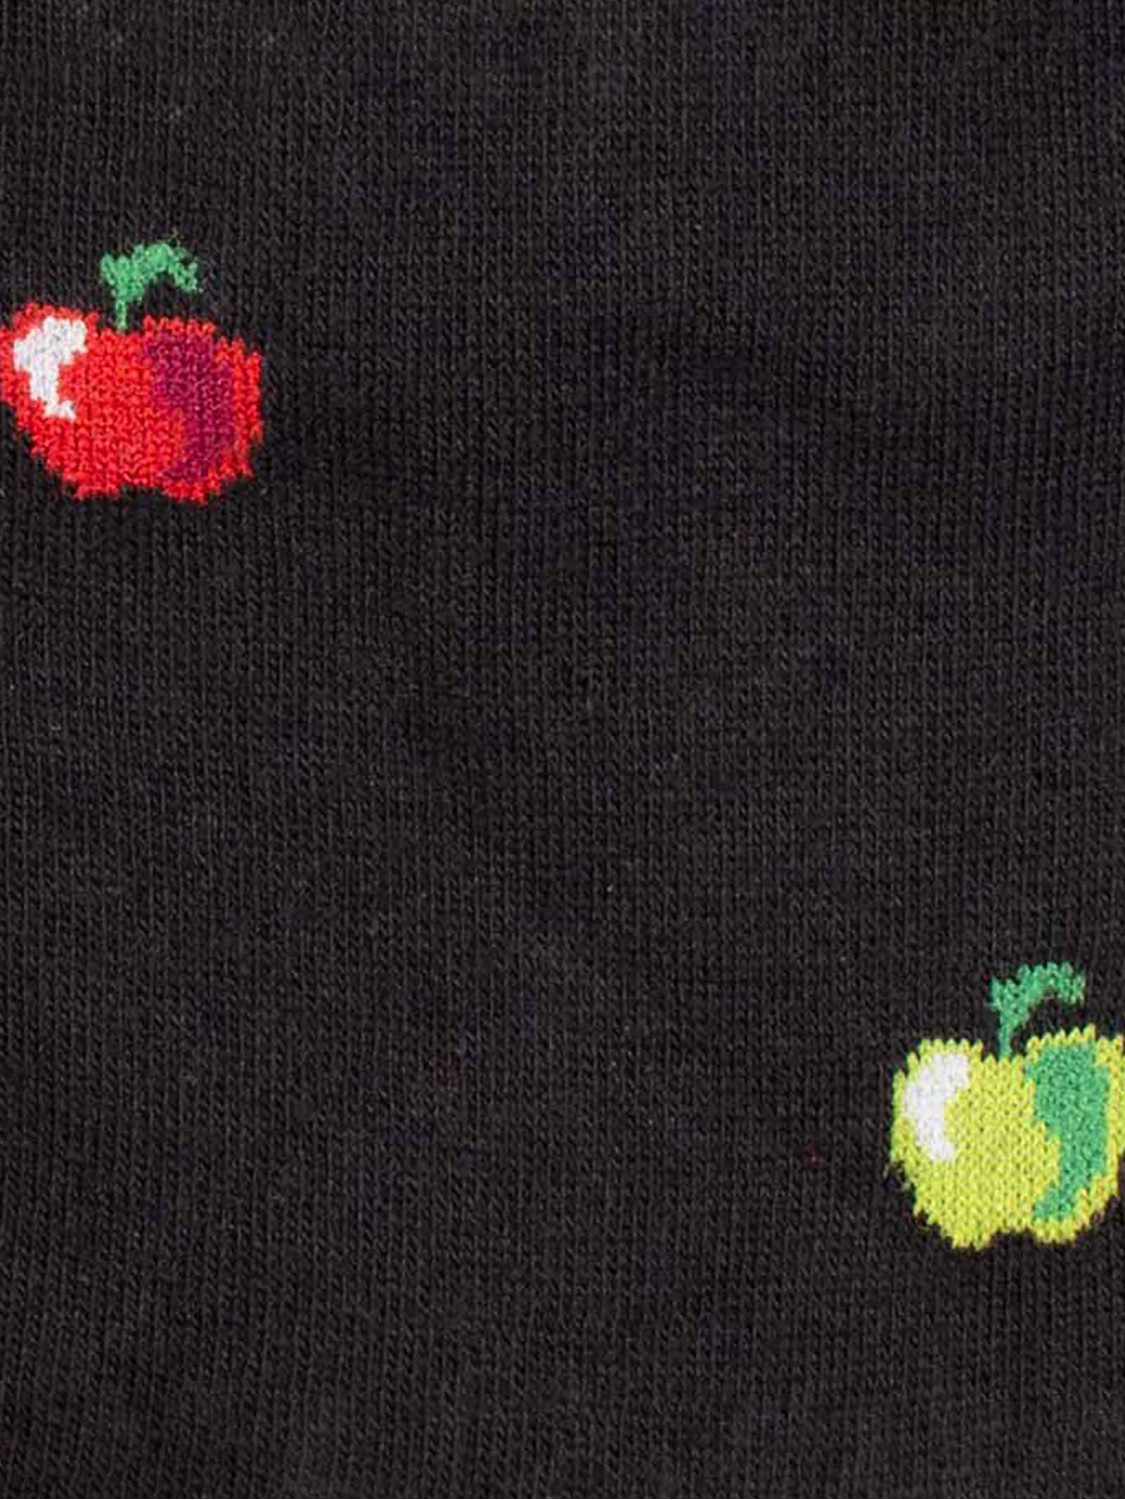 Apples pattern Men's Knee High Socks